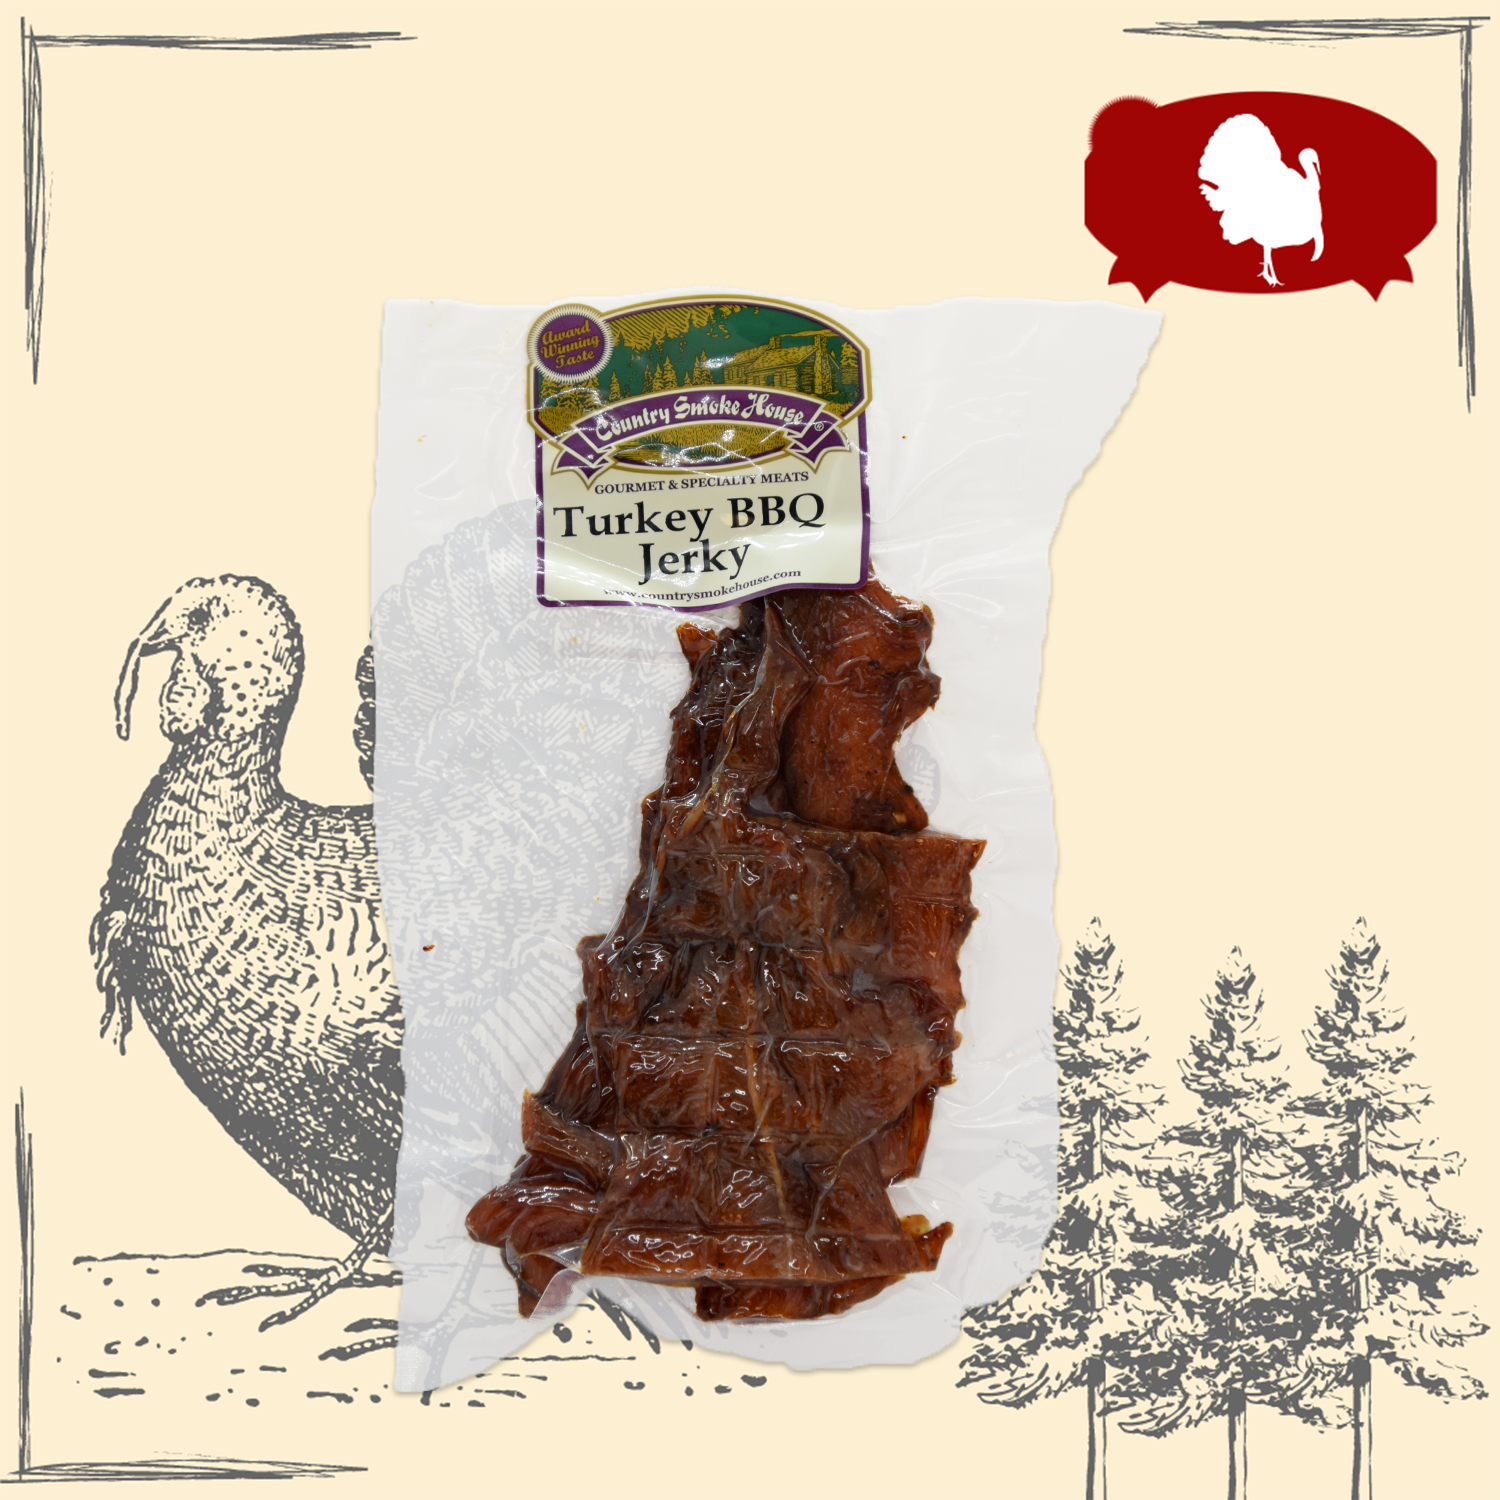 Turkey BBQ Jerky